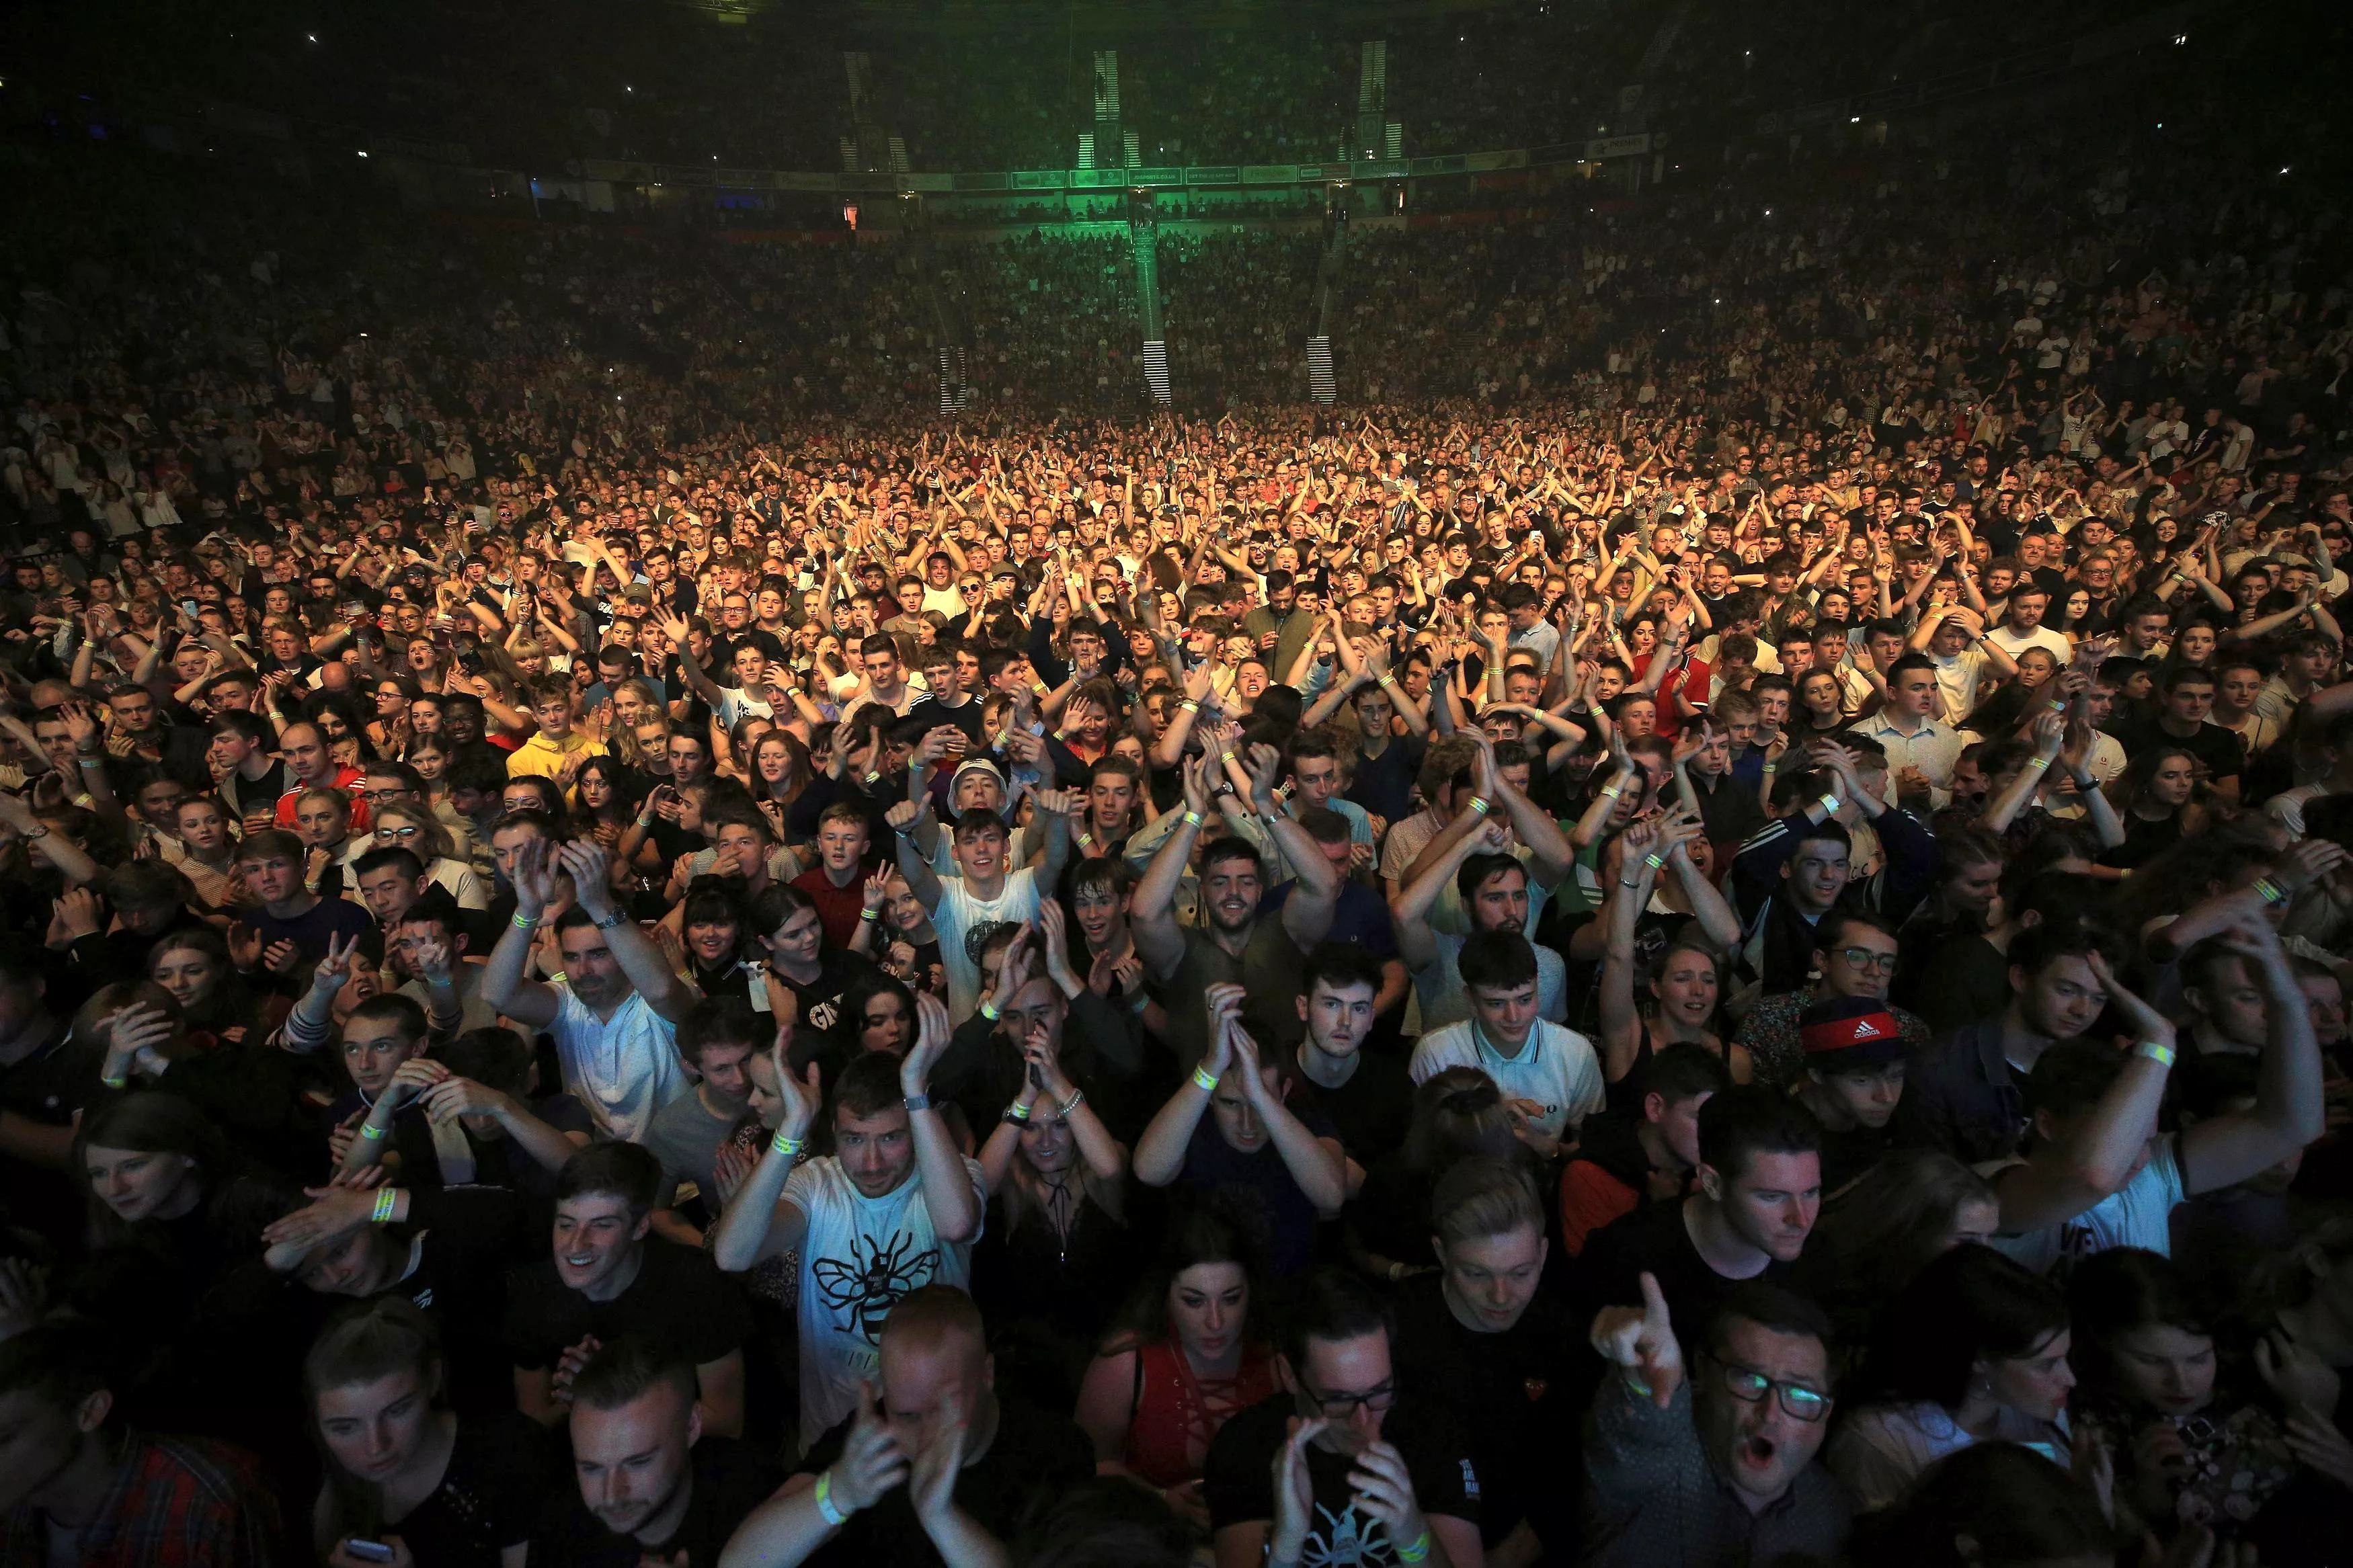 Много людей на концерте. Толпа на концерте. Толпа людей на концерте. Толпа народа на концерте.